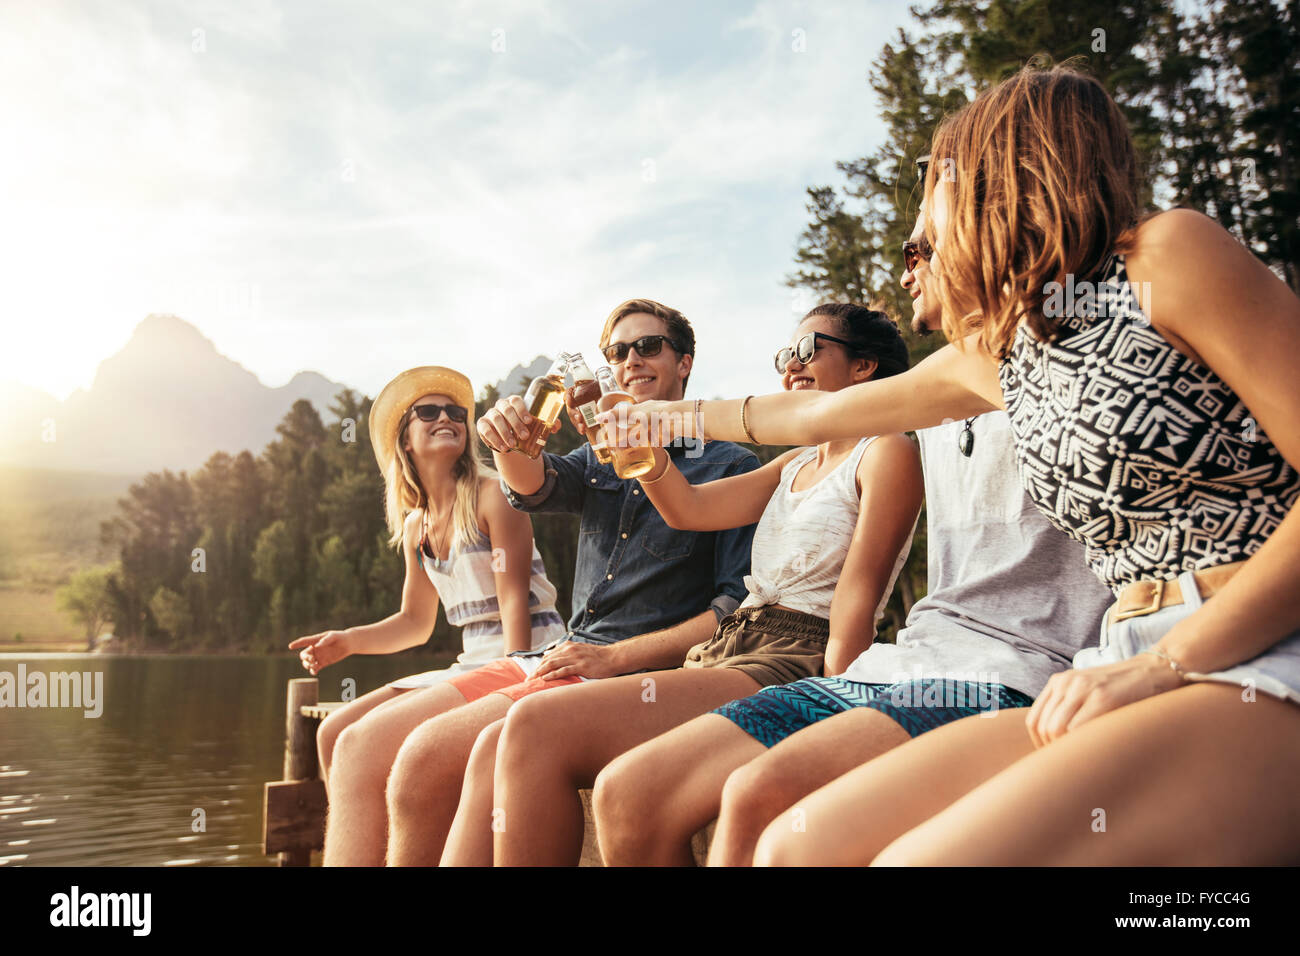 Porträt der jungen Menschen sitzen auf einem Steg und Toasten Bier an einem sonnigen Tag. Glückliche junge Männer und Frauen hängen am See Stockfoto